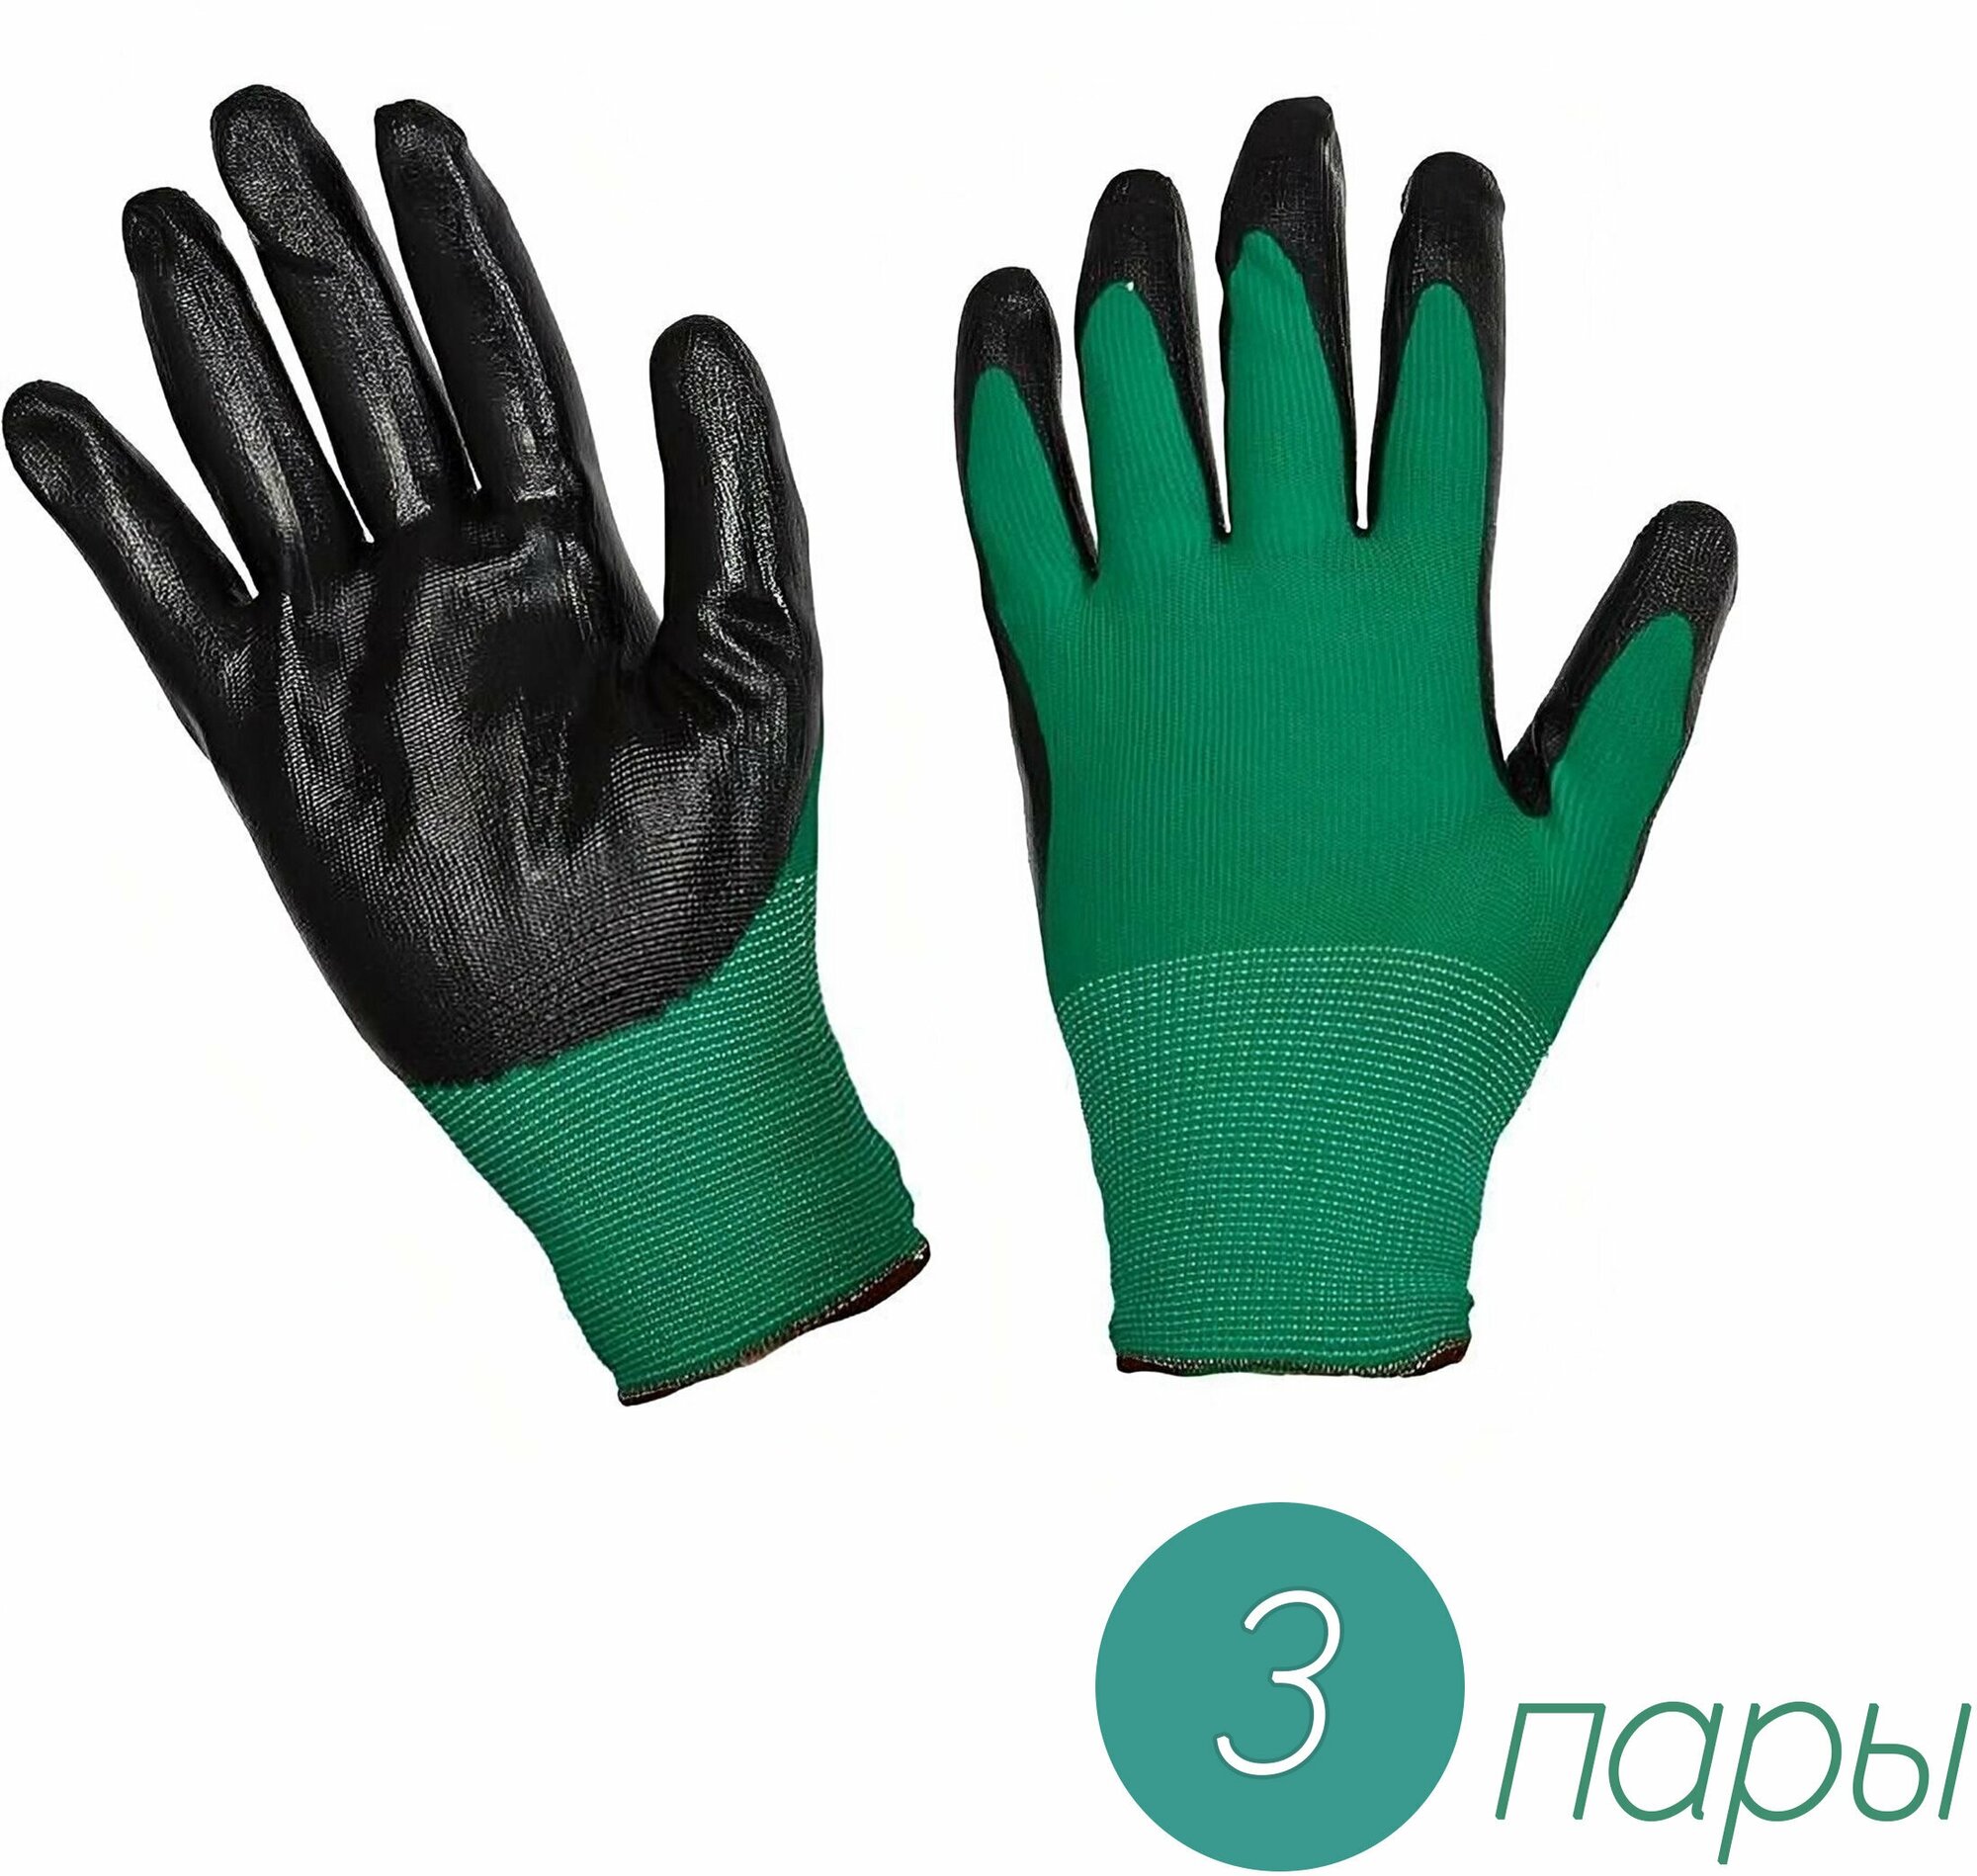 Нейлоновые перчатки, трикотажные, с черным нитриловым покрытием, 3 пары. Защищает руки от загрязнений и влаги при работе с мокрой почвой, обеспечивает надежный захват инструмента.